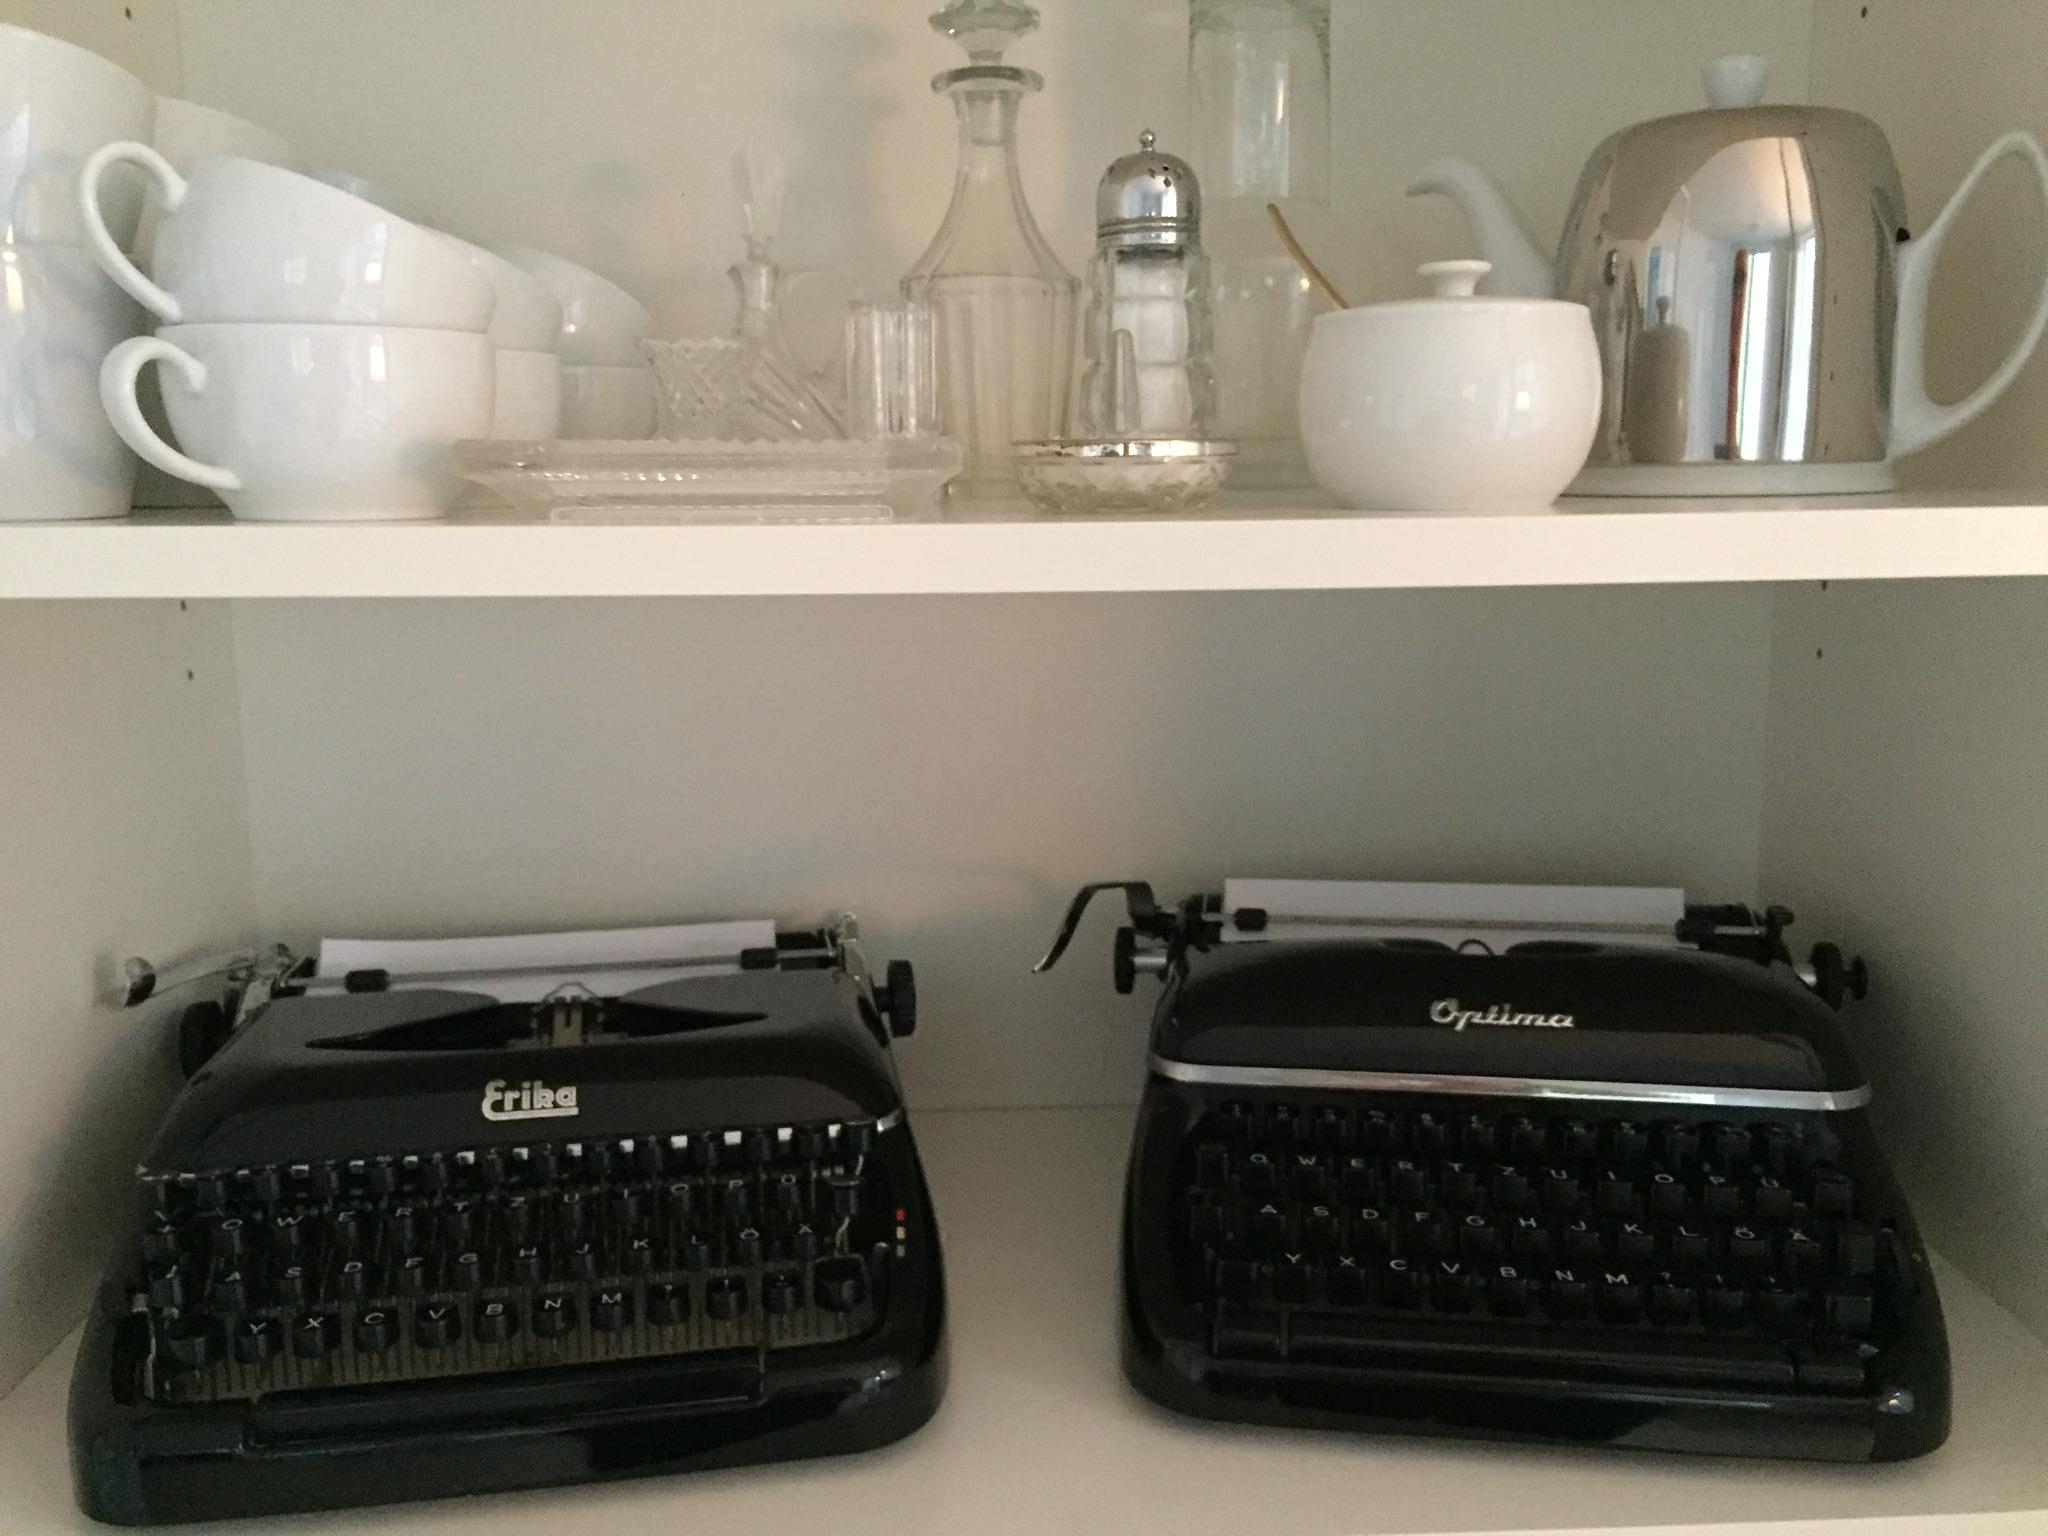 Schreibmaschinenliebe ERIKA und OPTIMA
#Vintage #Schreibmaschine #Dibbern #AltesGlas